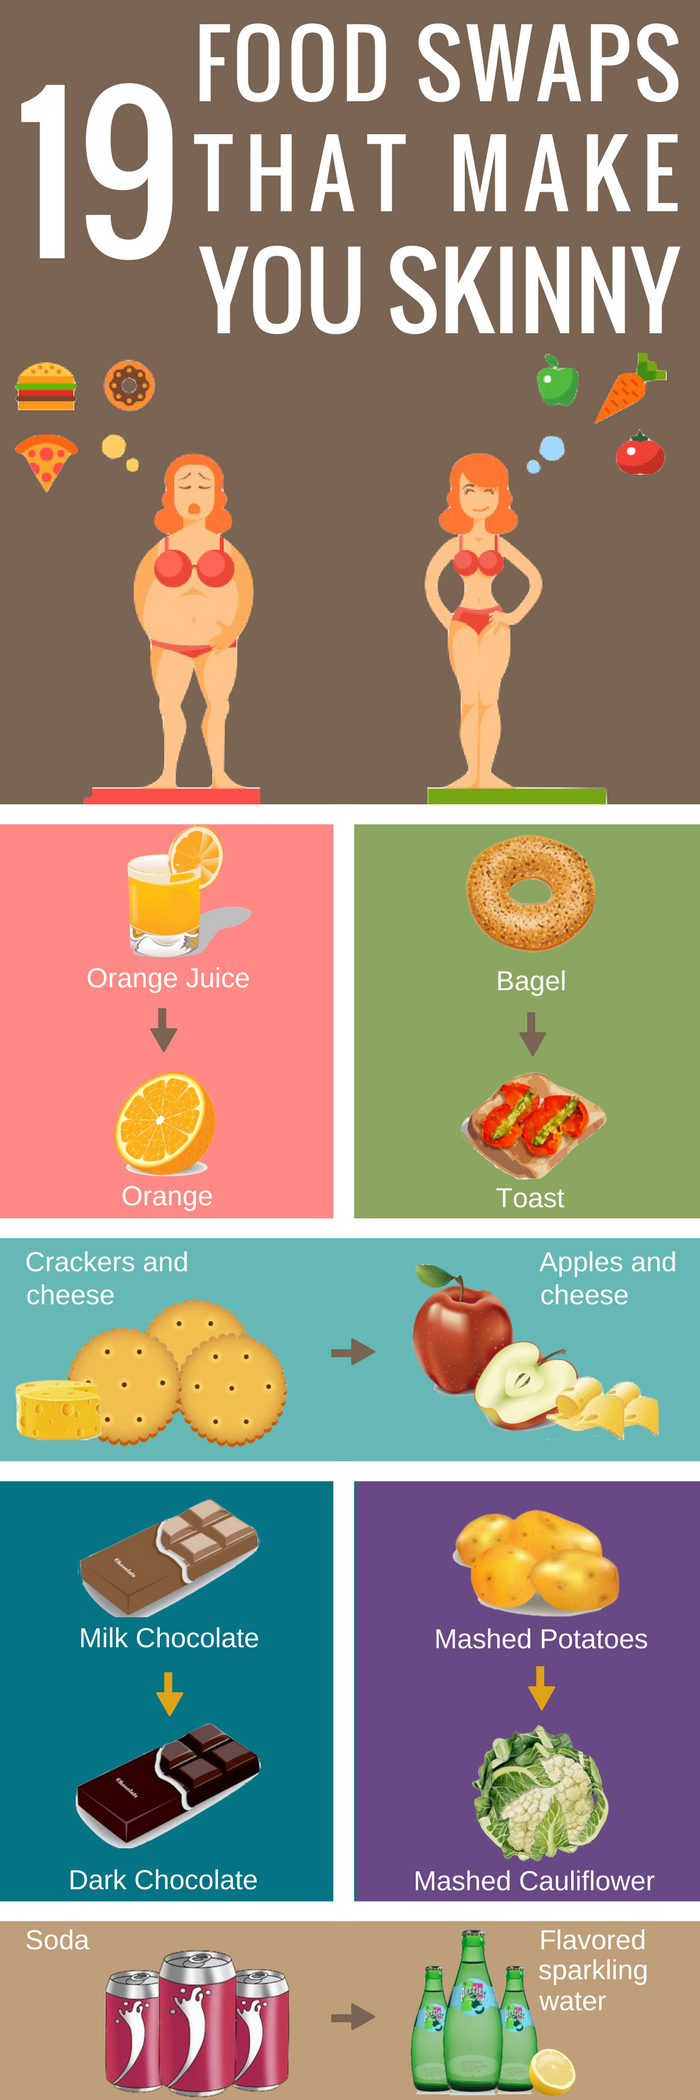 19 Food Swaps that Make You Skinny